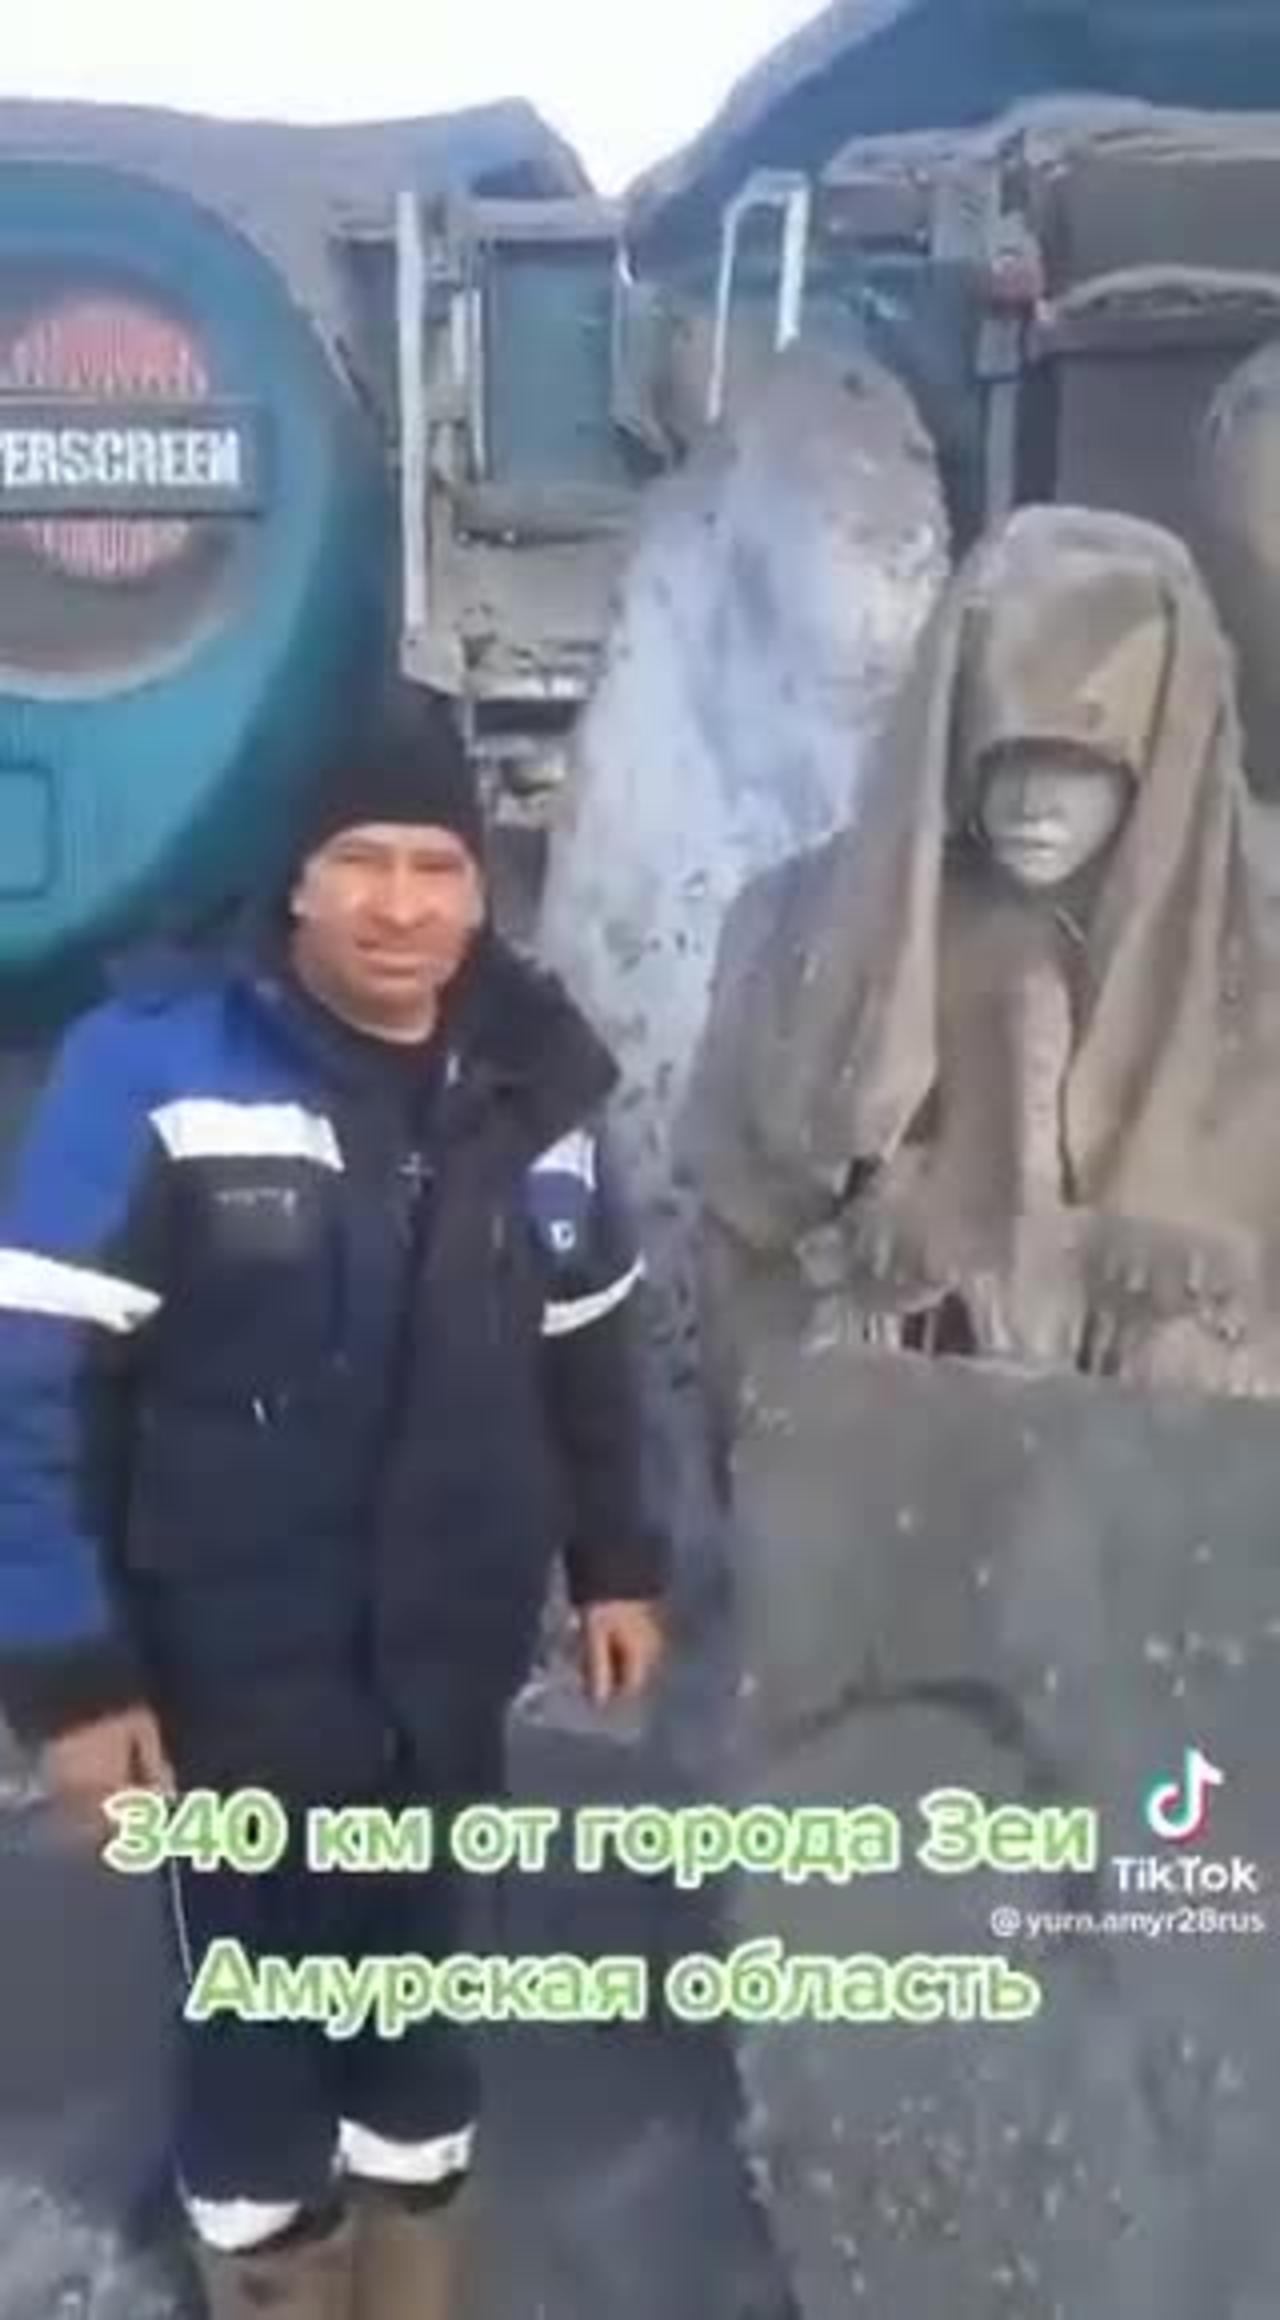 Anjo encomtrado em yakutia Russia